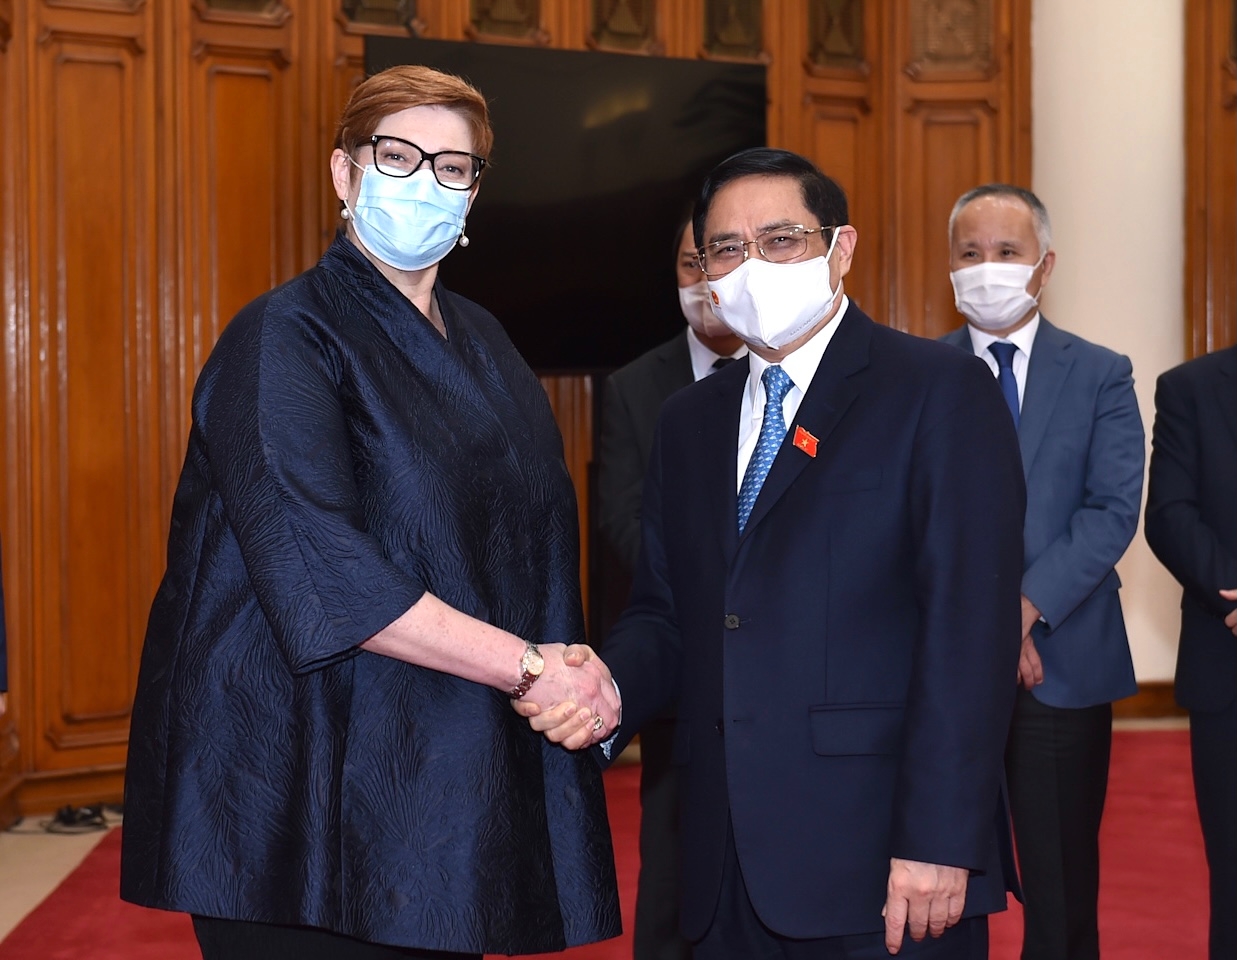 Thủ tướng Chính phủ Phạm Minh Chính tiếp xã giao Bộ trưởng Ngoại giao Australia Marise Payne đang có chuyến thăm Việt Nam. Ảnh: VGP/Nhật Bắc